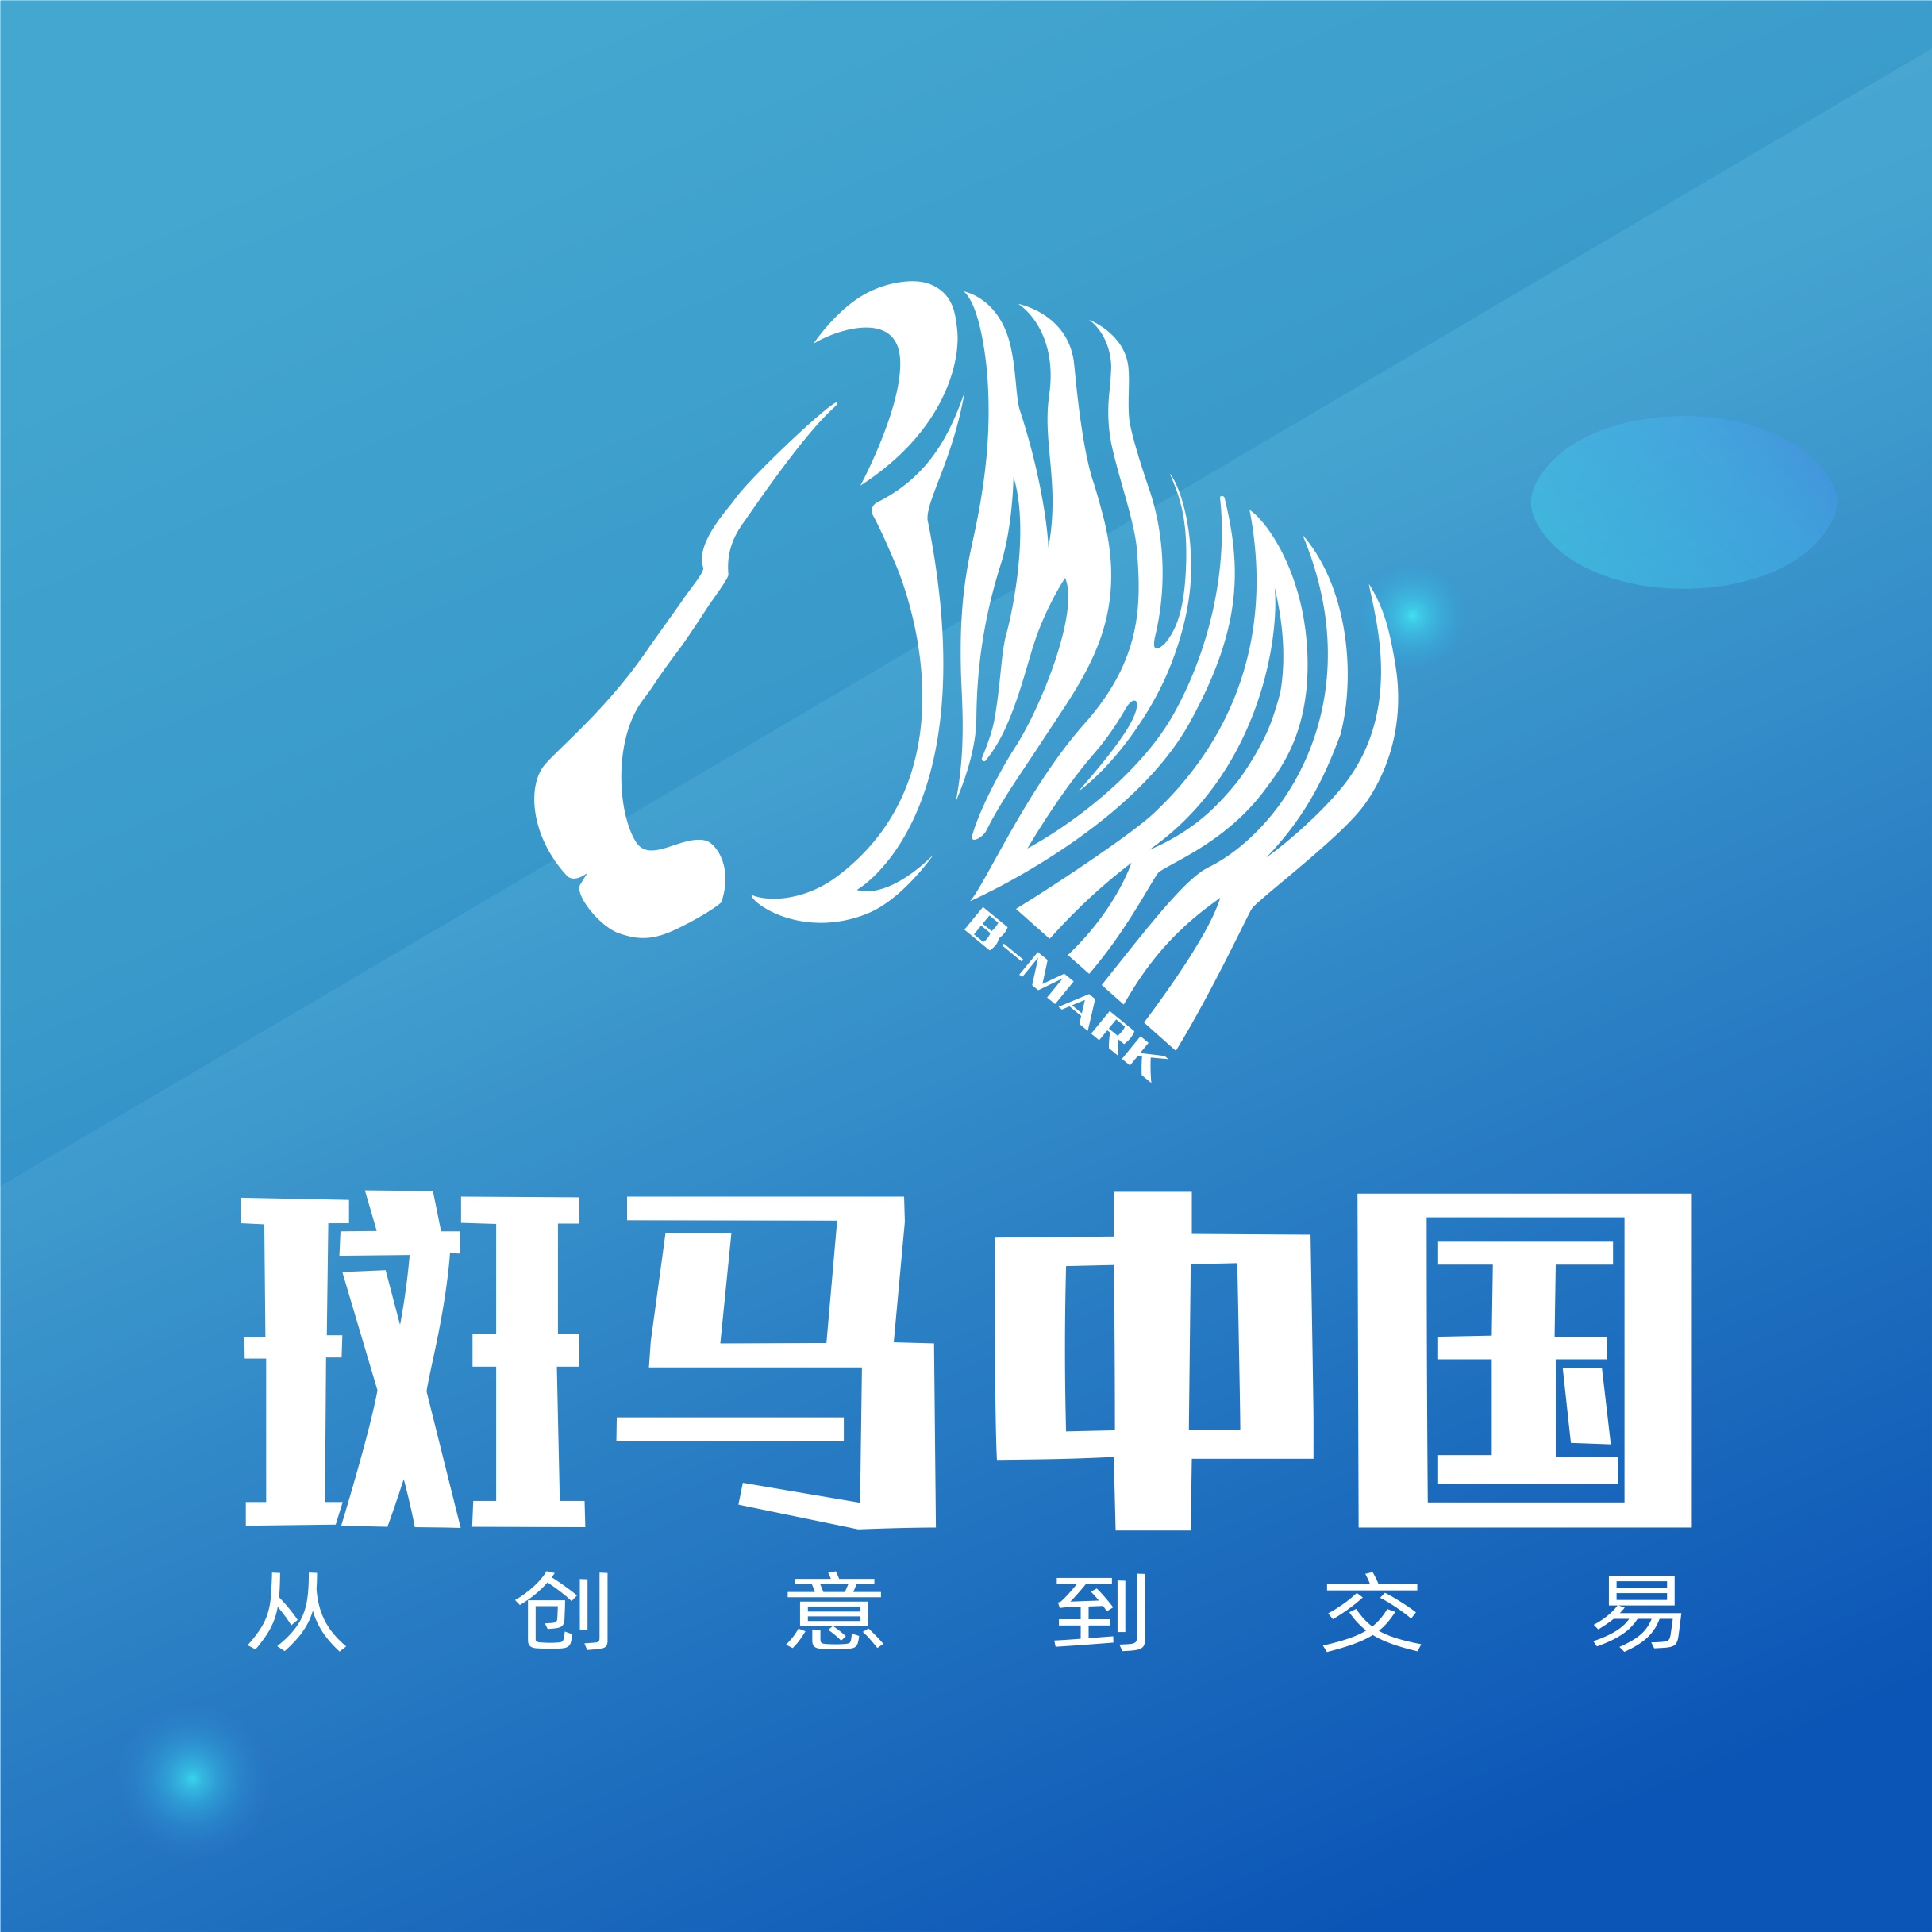 斑马中国3.0即将在2021年数字版权交易博览会正式发布上线